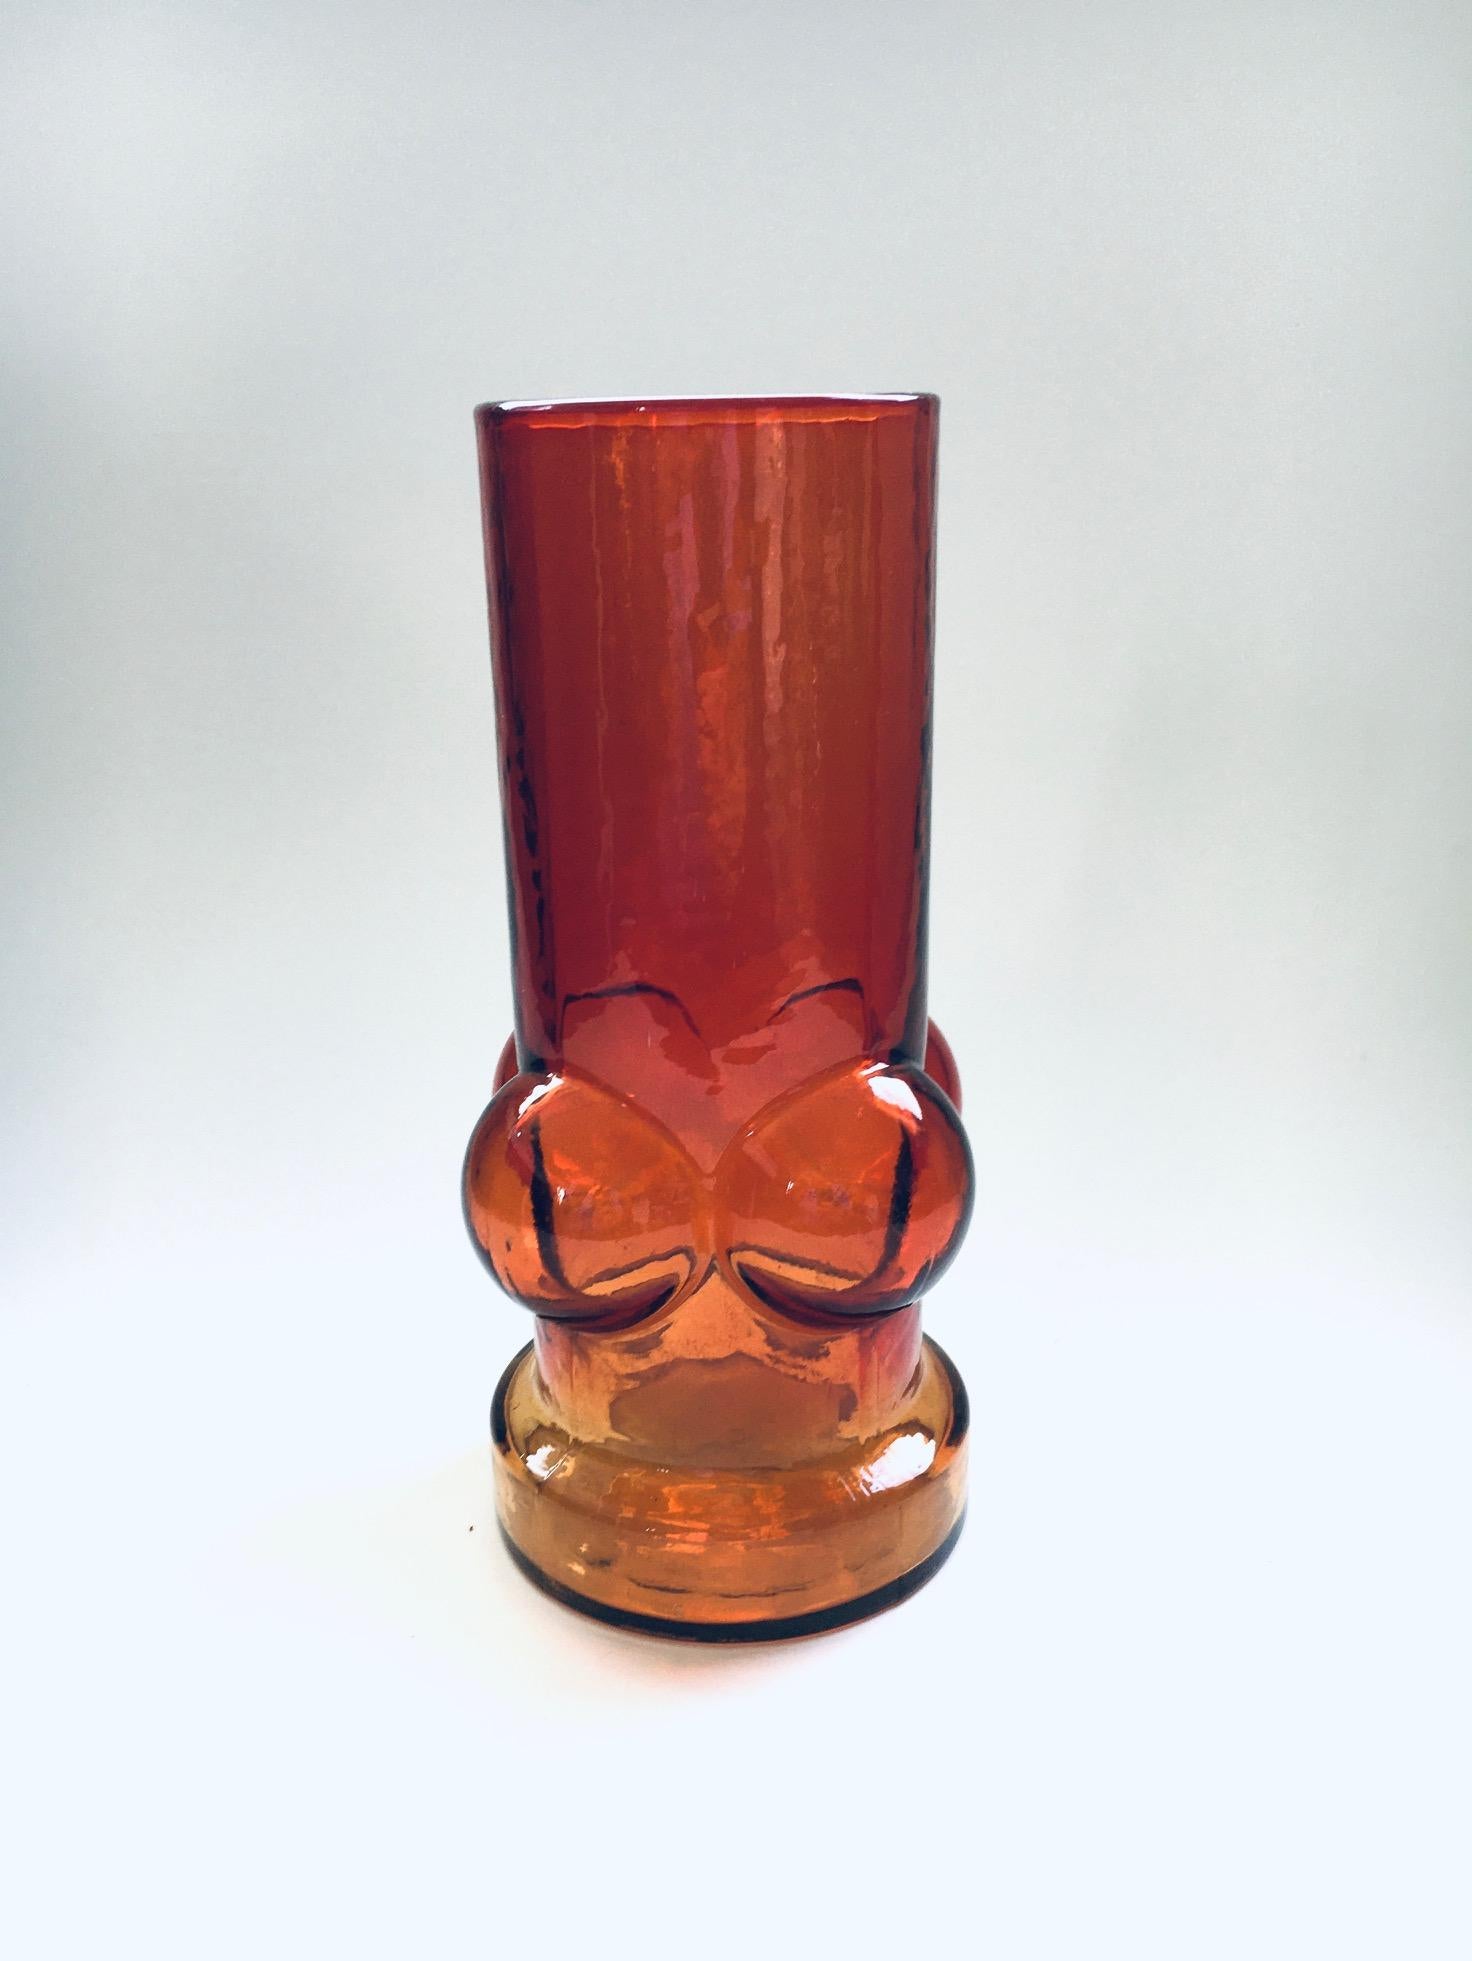 Vintage Midcentury Modern Scandinavian Design Rare Art Glass Vase von Nanny Still, hergestellt in Finnland 1960er Jahre. Orange bis rot gefärbte Pressglasvase mit Kugelform und Bügelboden. In perfektem Zustand. Maße 22,5cm x 11,5cm x 11,5cm.